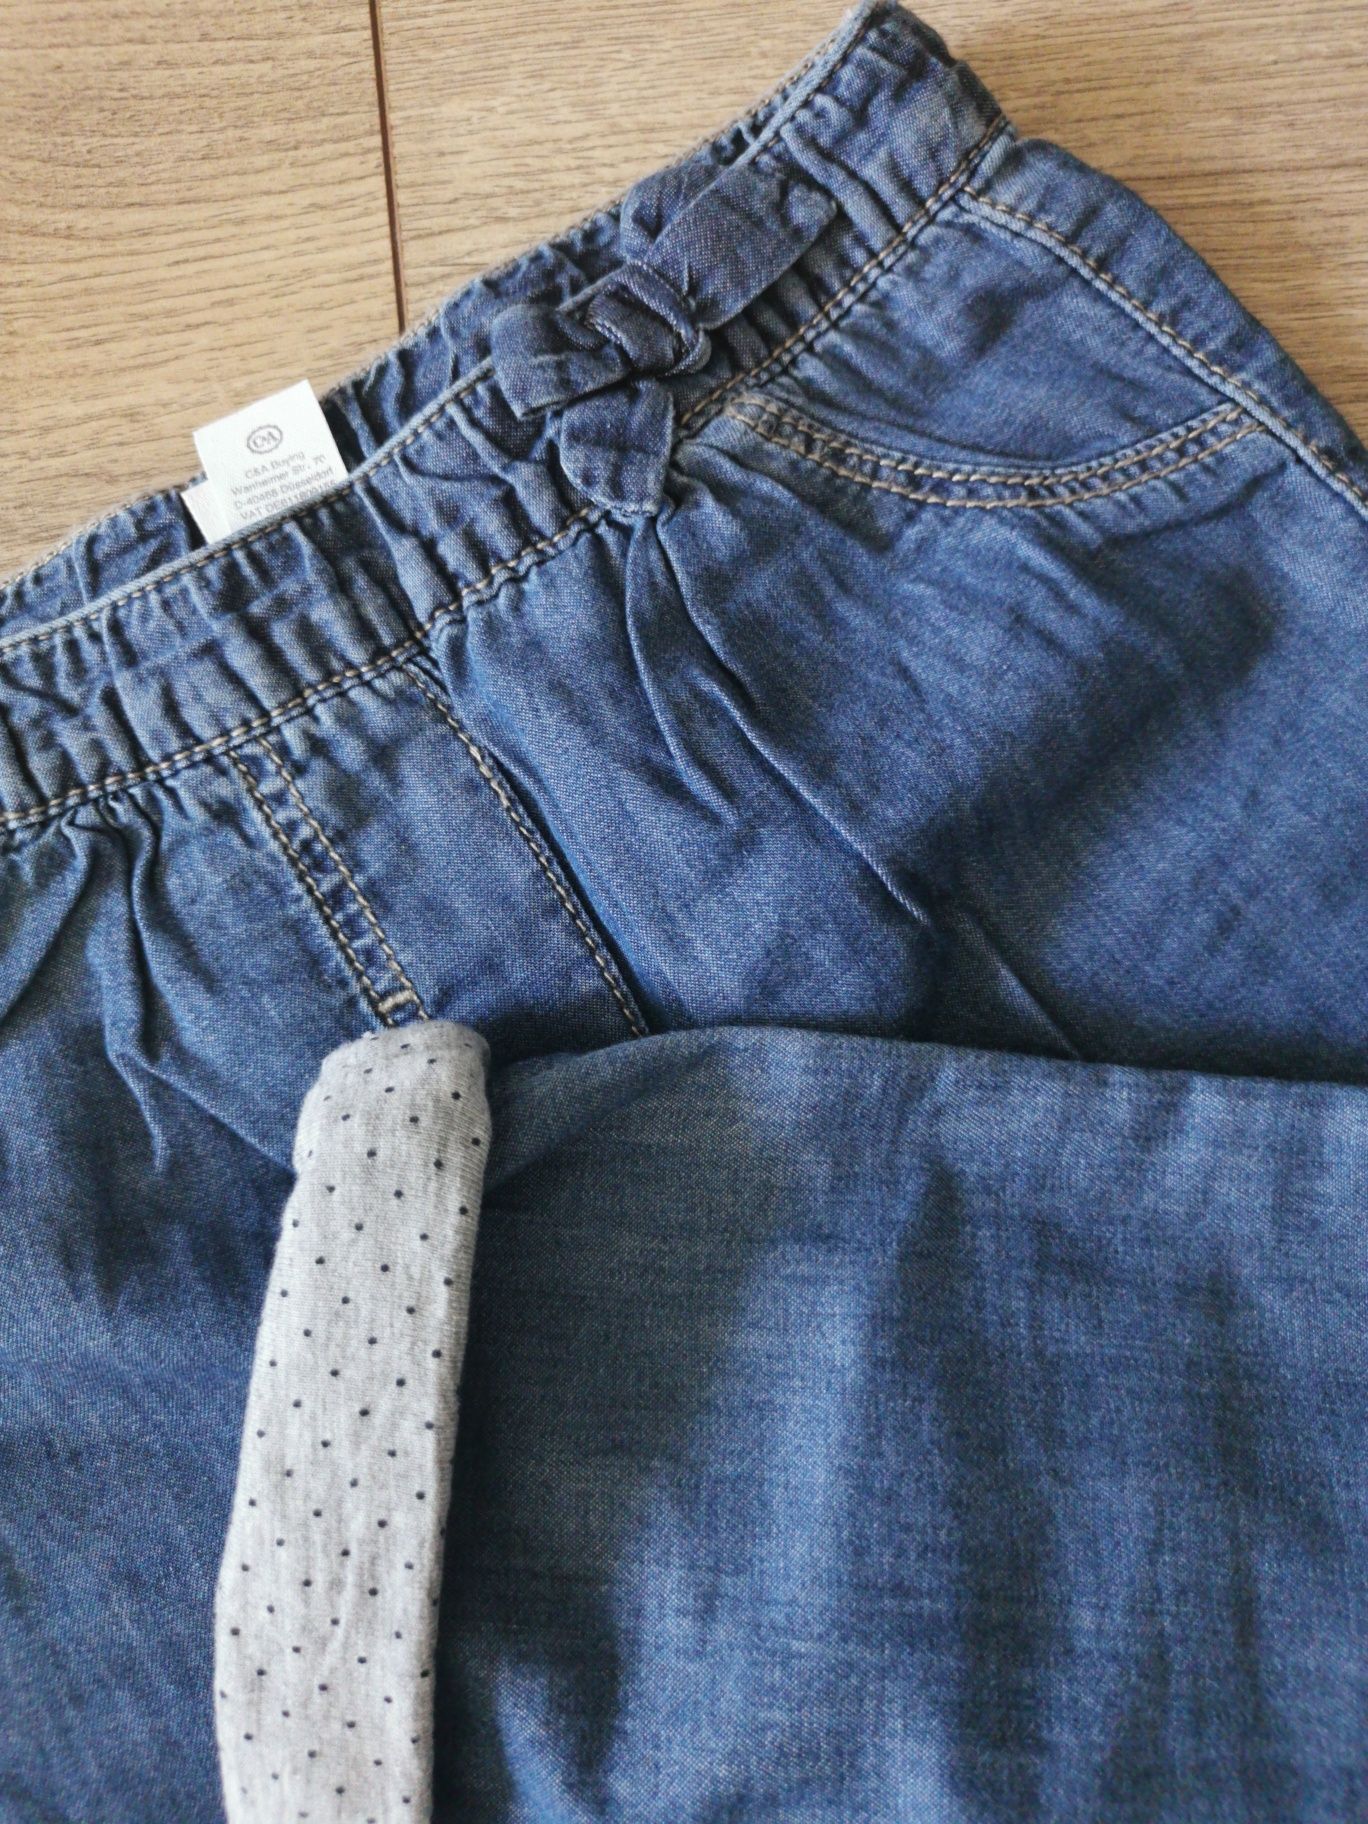 C&A spodnie jeans na podszewce, rozm. 80-92 cm